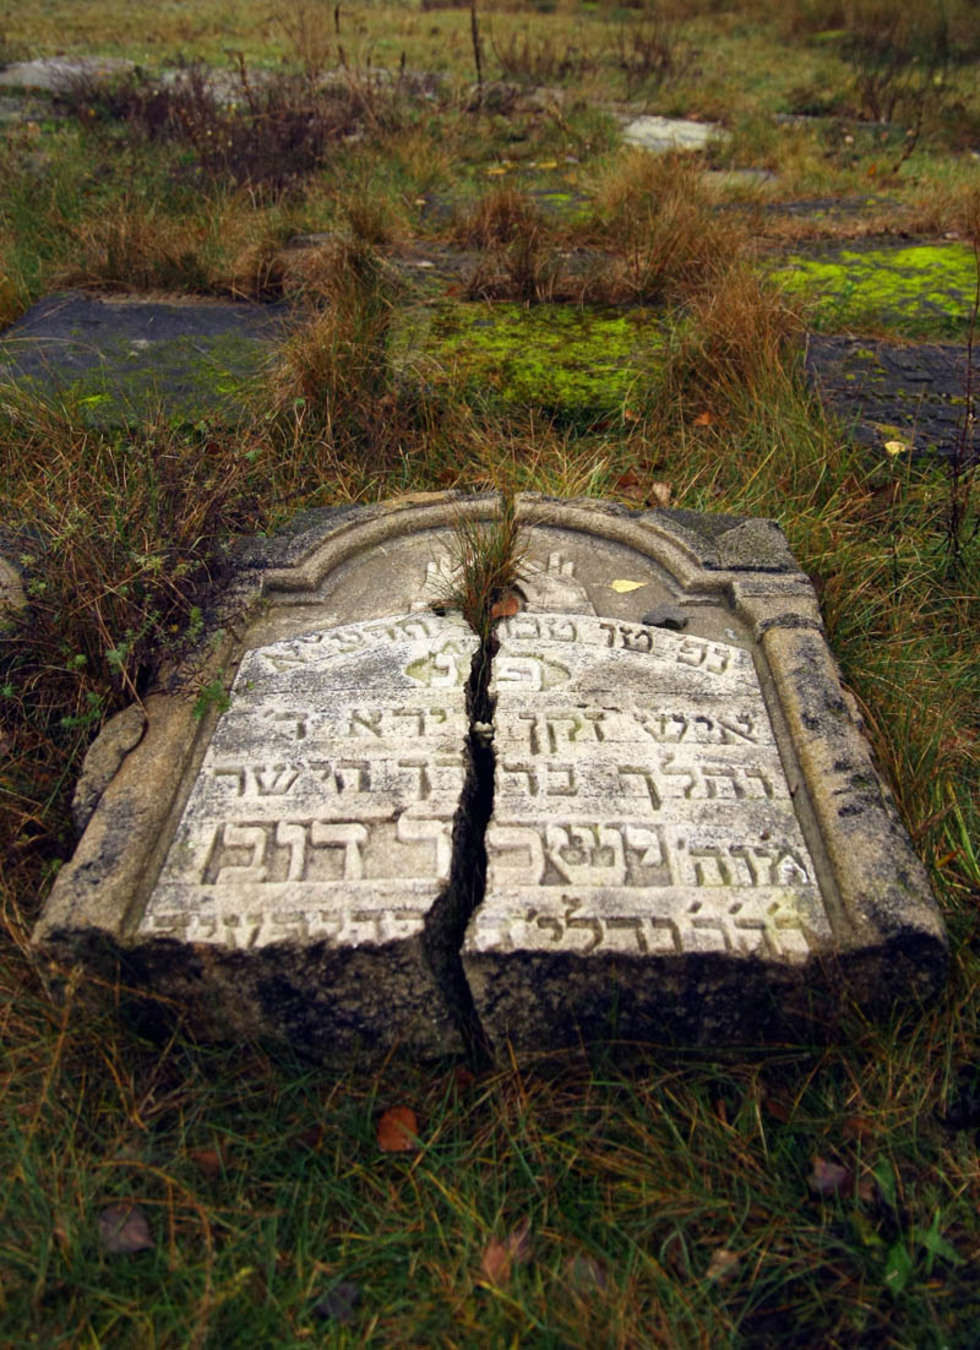  Jeśli chcesz oddac glos na <b>            Cmentarz zydowski w Bilgoraju  </b> wyślij SMS-a o treści <b>DW.MIEJSCE12</b> pod numer 71051. Koszt SMS-a 1 zl + Vat.